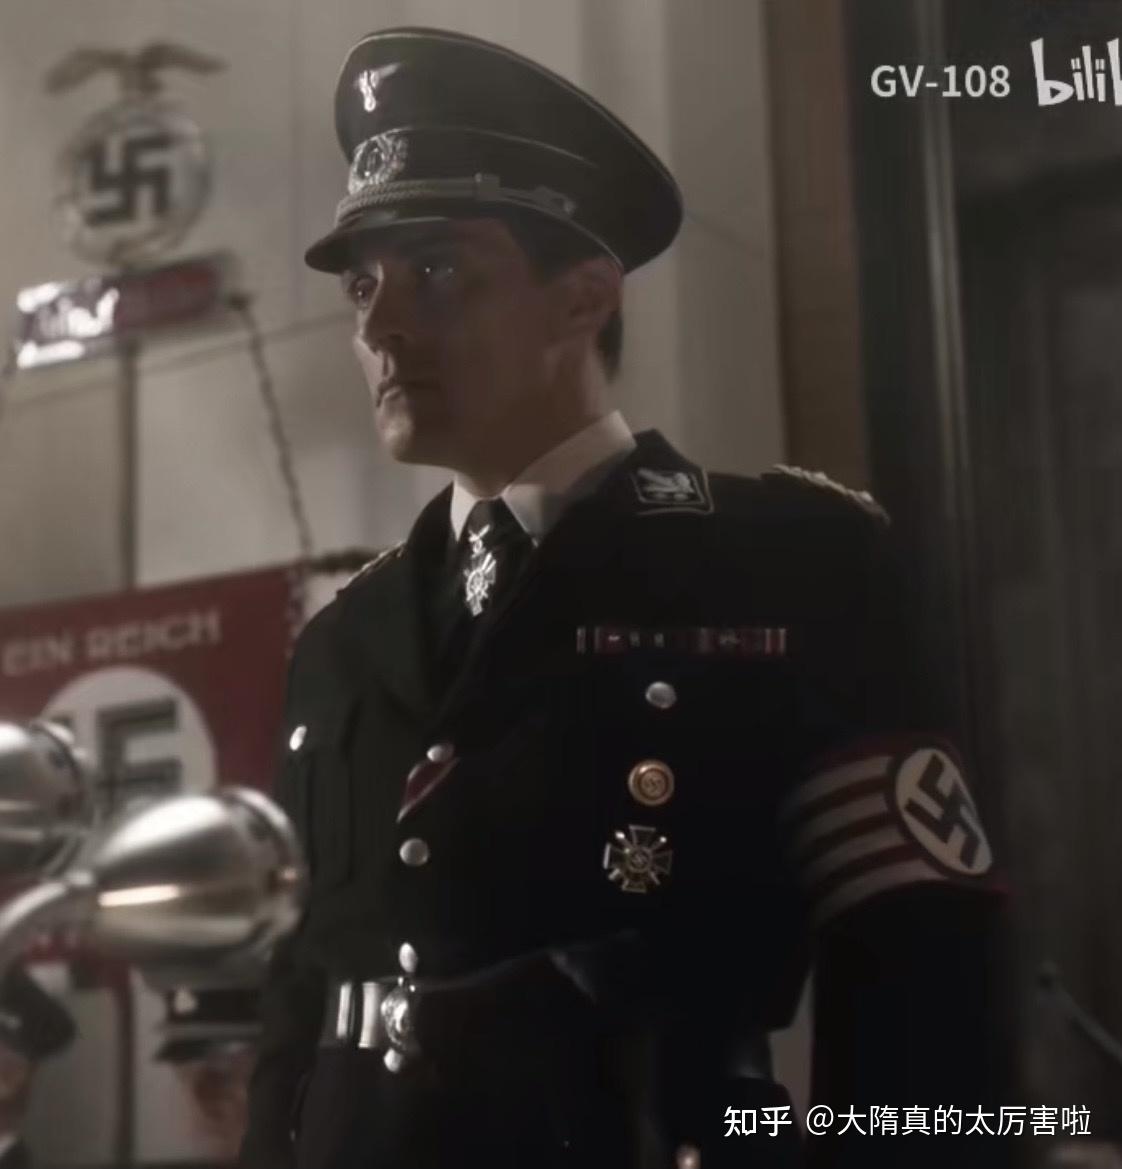 电视剧《高堡奇人》中出现的制服与勋章赏析——(1)史密斯篇 